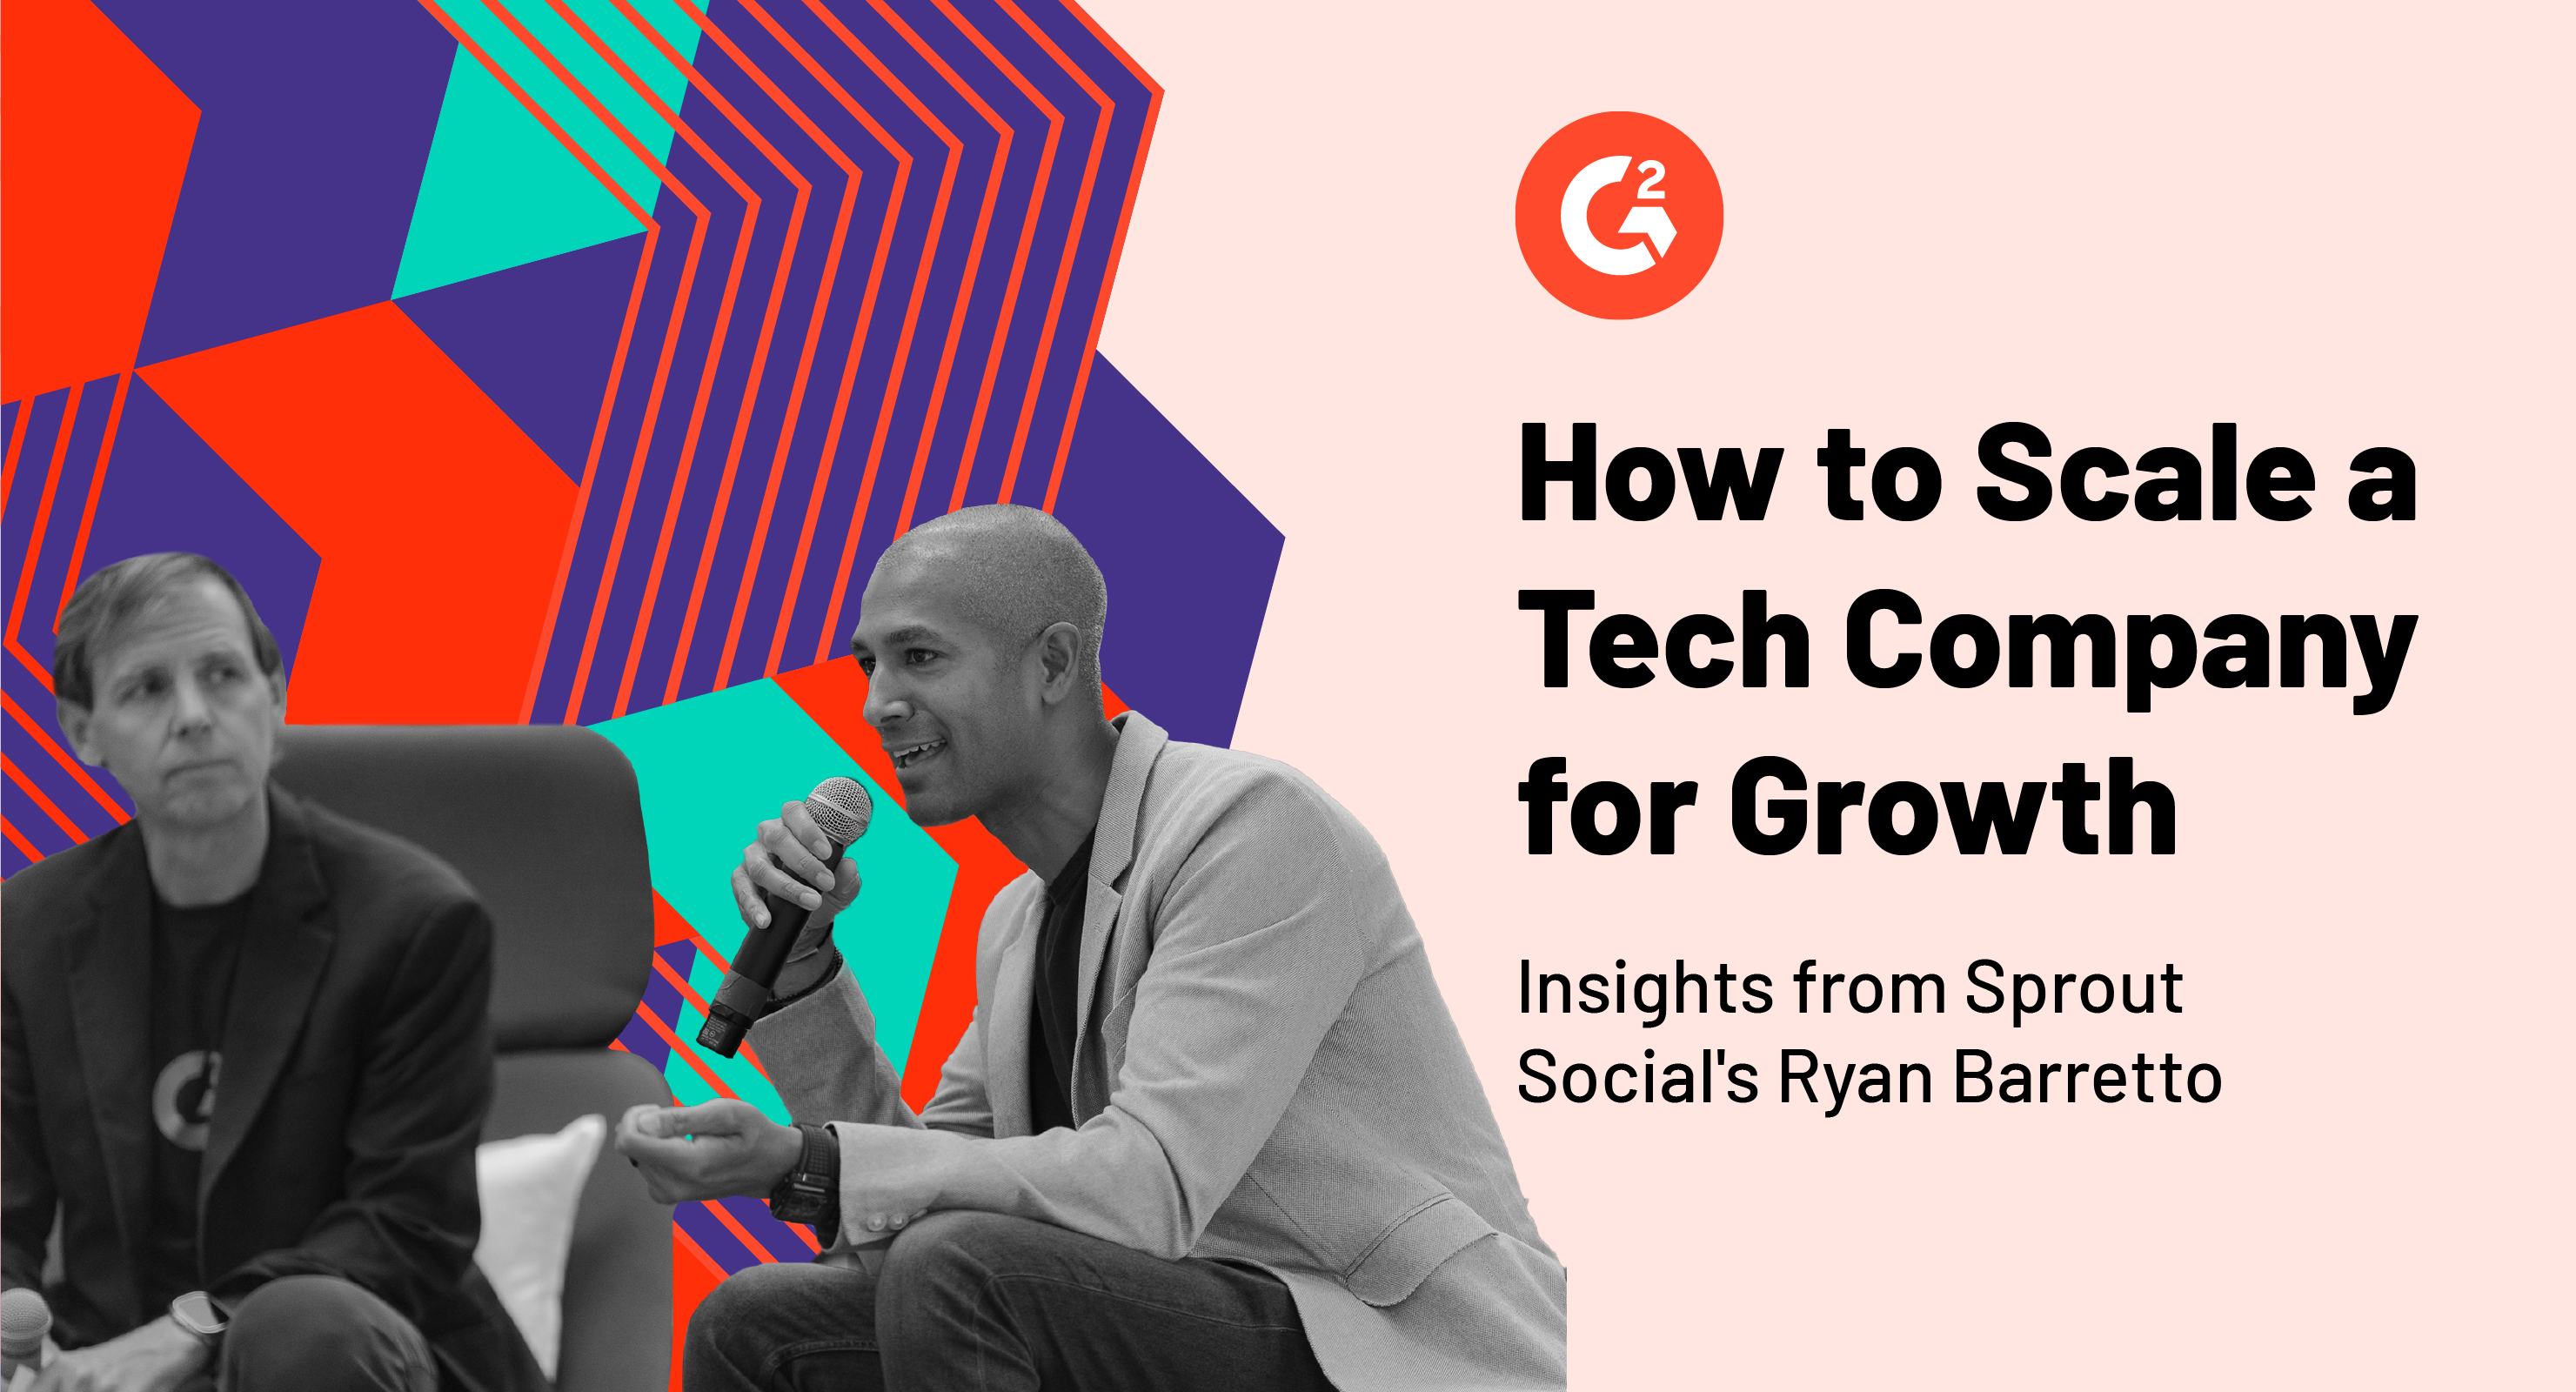 ريان باريتو من Sprout Social يتحدث عن توسيع نطاق شركة التكنولوجيا لتحقيق نمو مرتفع